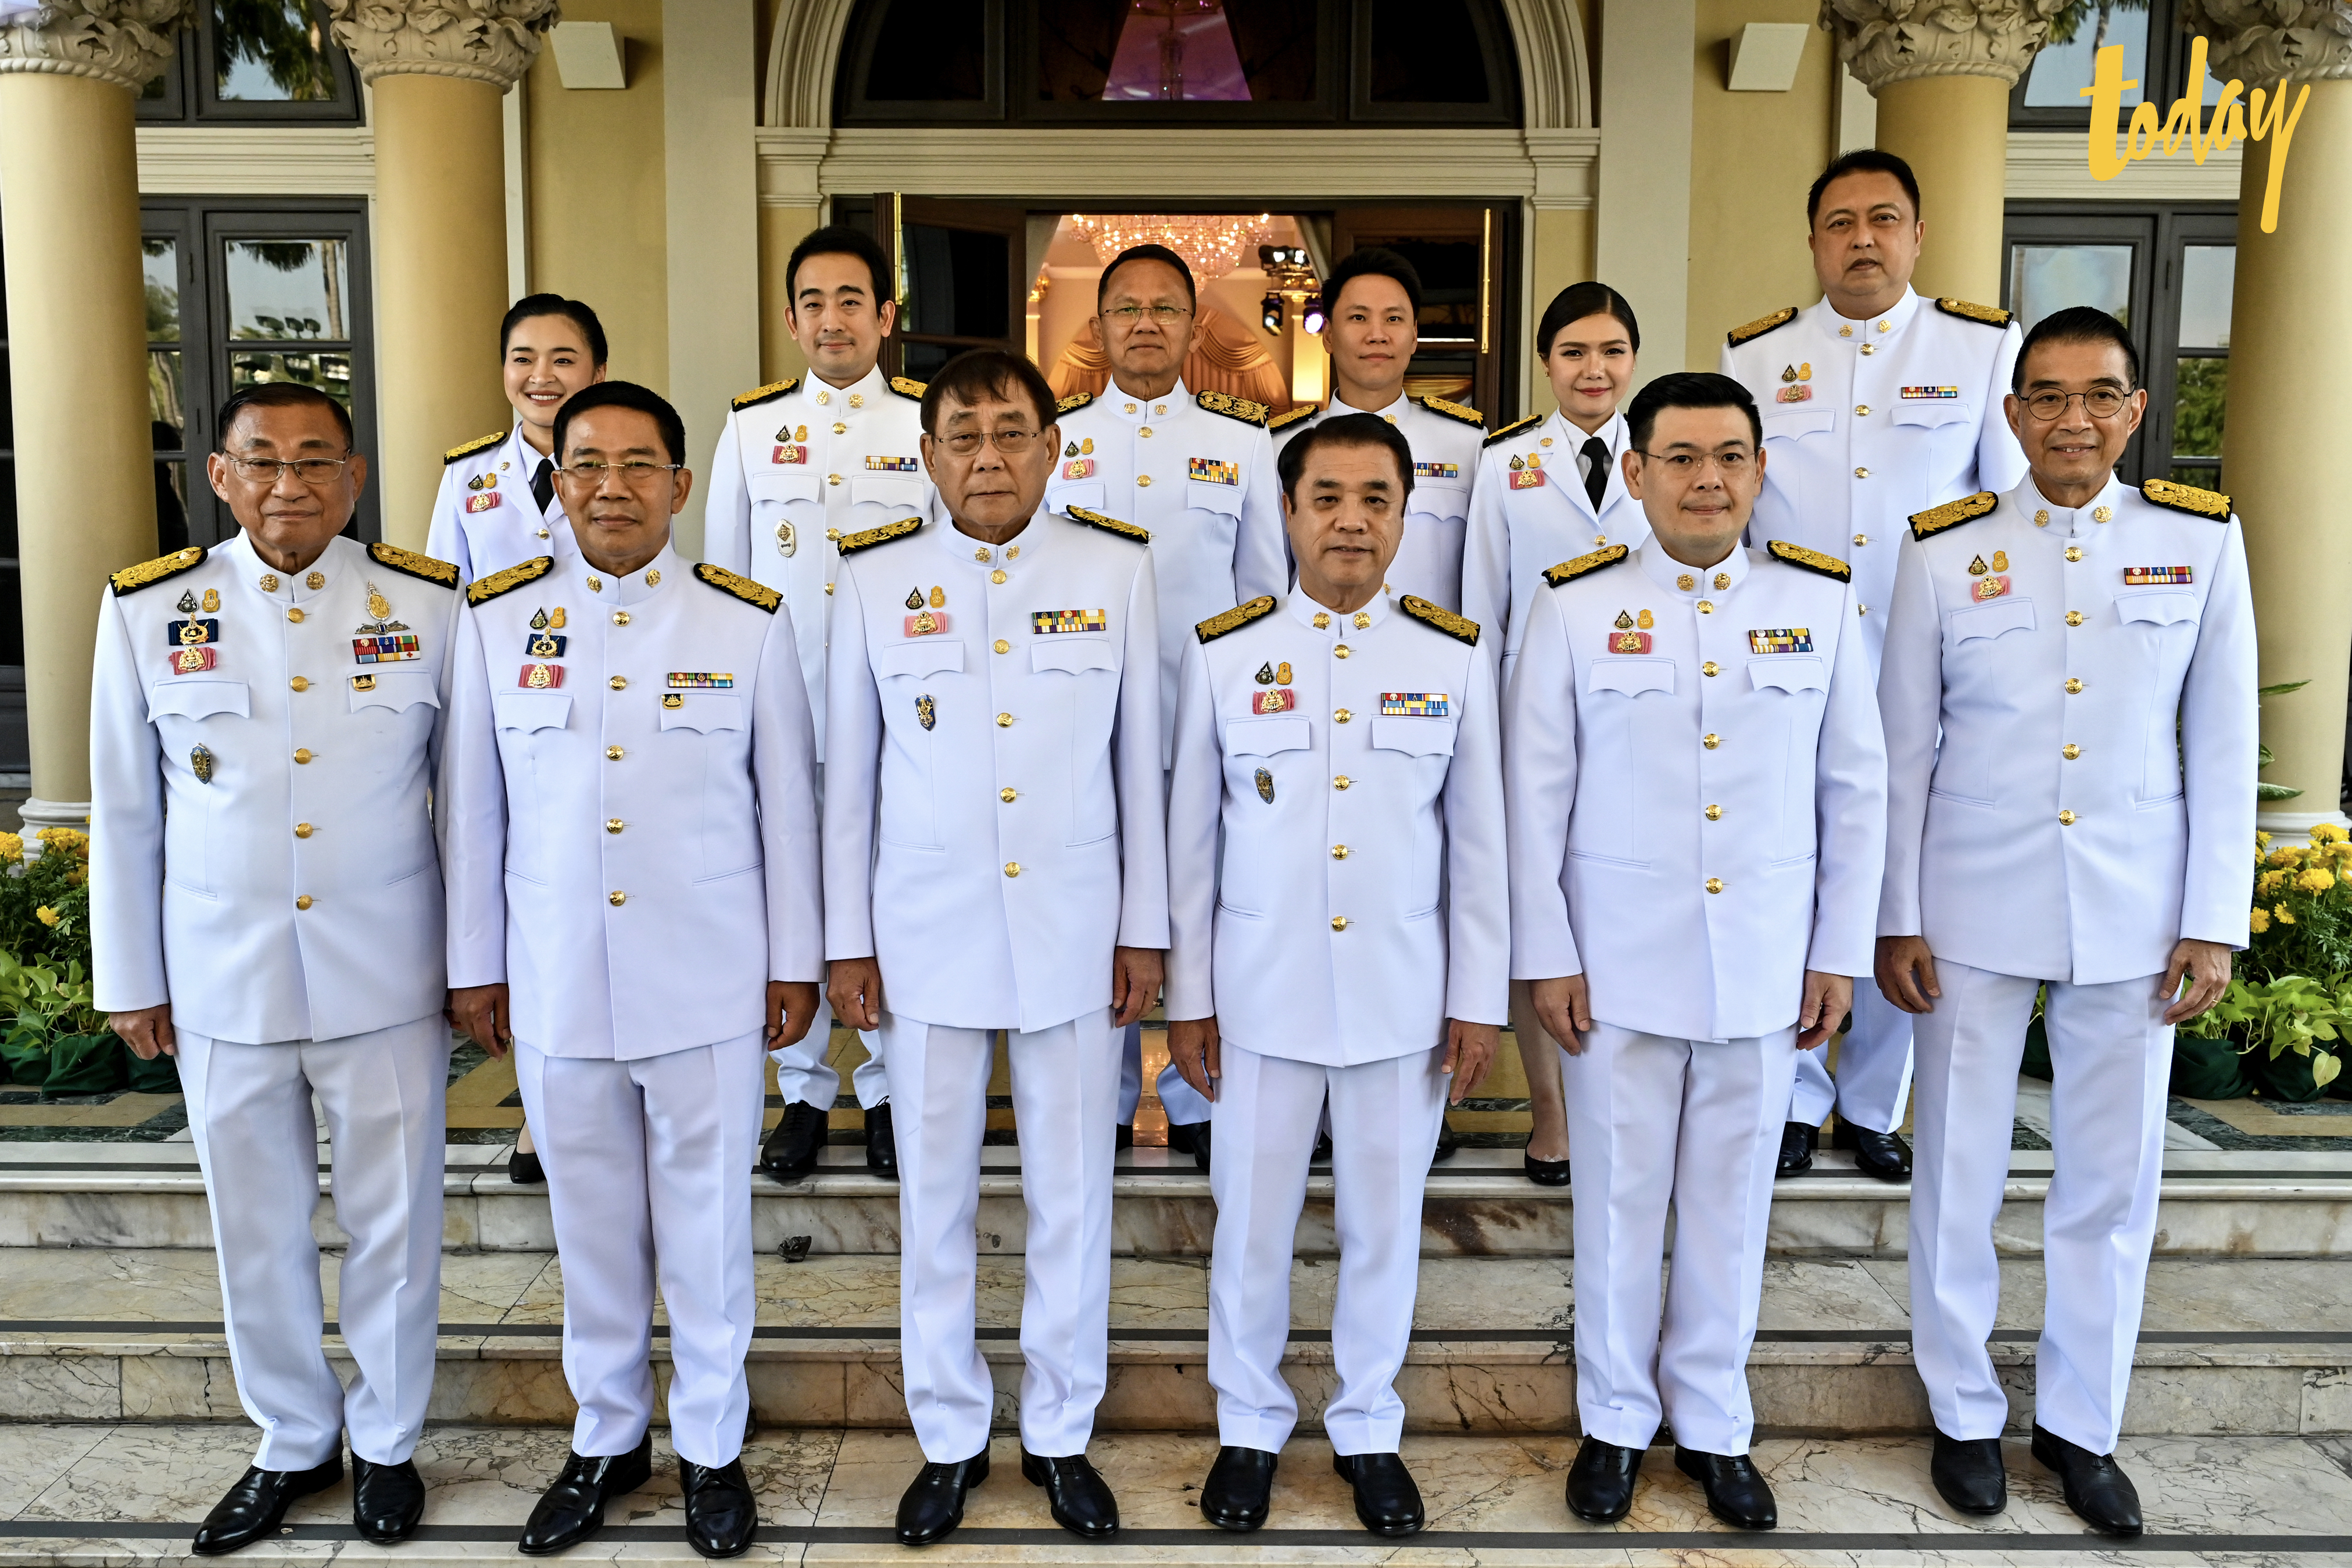 12 รัฐมนตรีใหม่ ถ่ายรูปเป็นที่ระลึก ก่อนเข้าเฝ้าฯ ถวายสัตย์ปฏิญาณก่อนเข้ารับหน้าที่